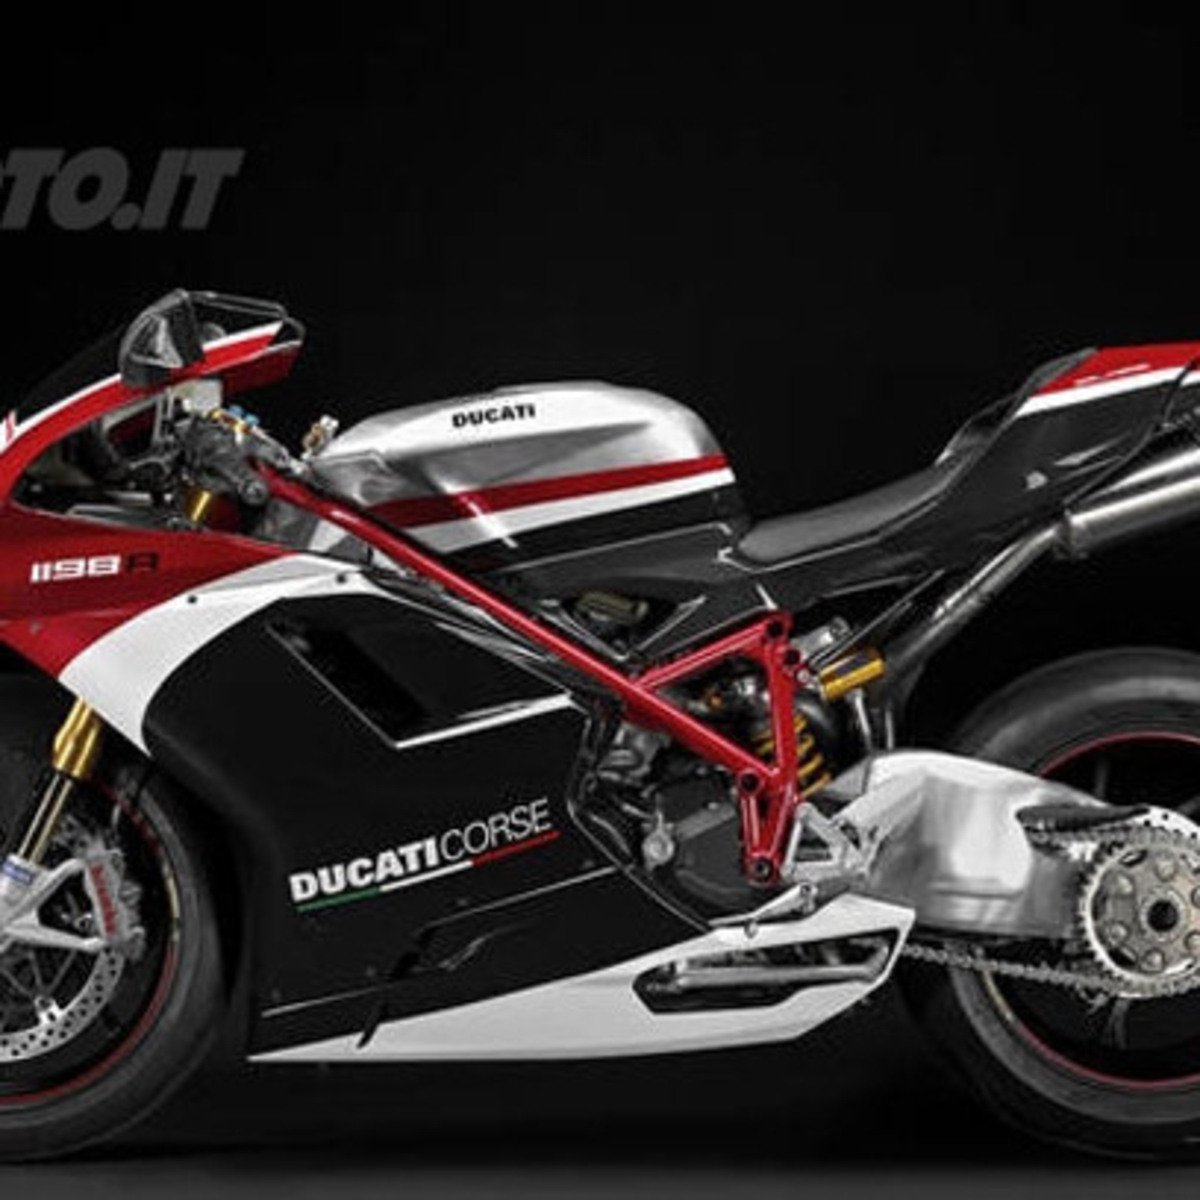 Ducati 1198 R Corse Special Edition (2010 - 12)